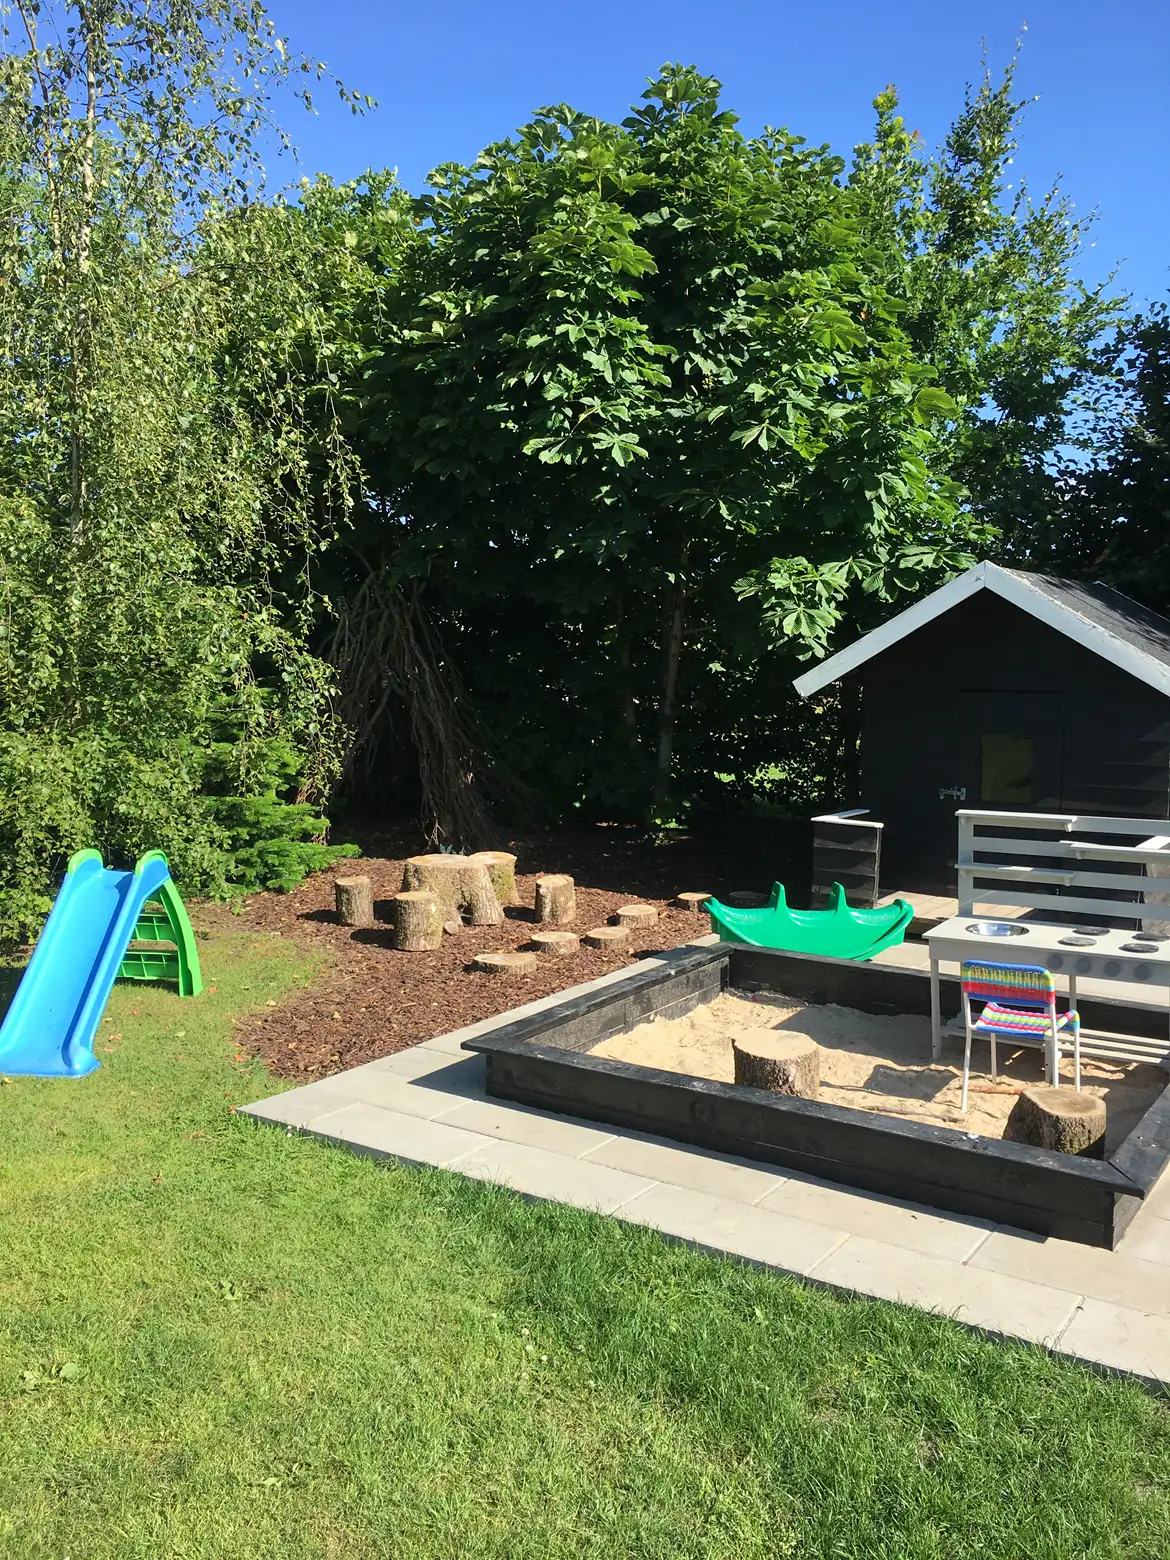 Have med tr&aelig;er, stor sandkasse, hytte, legeting og plads med tr&aelig;stubbe